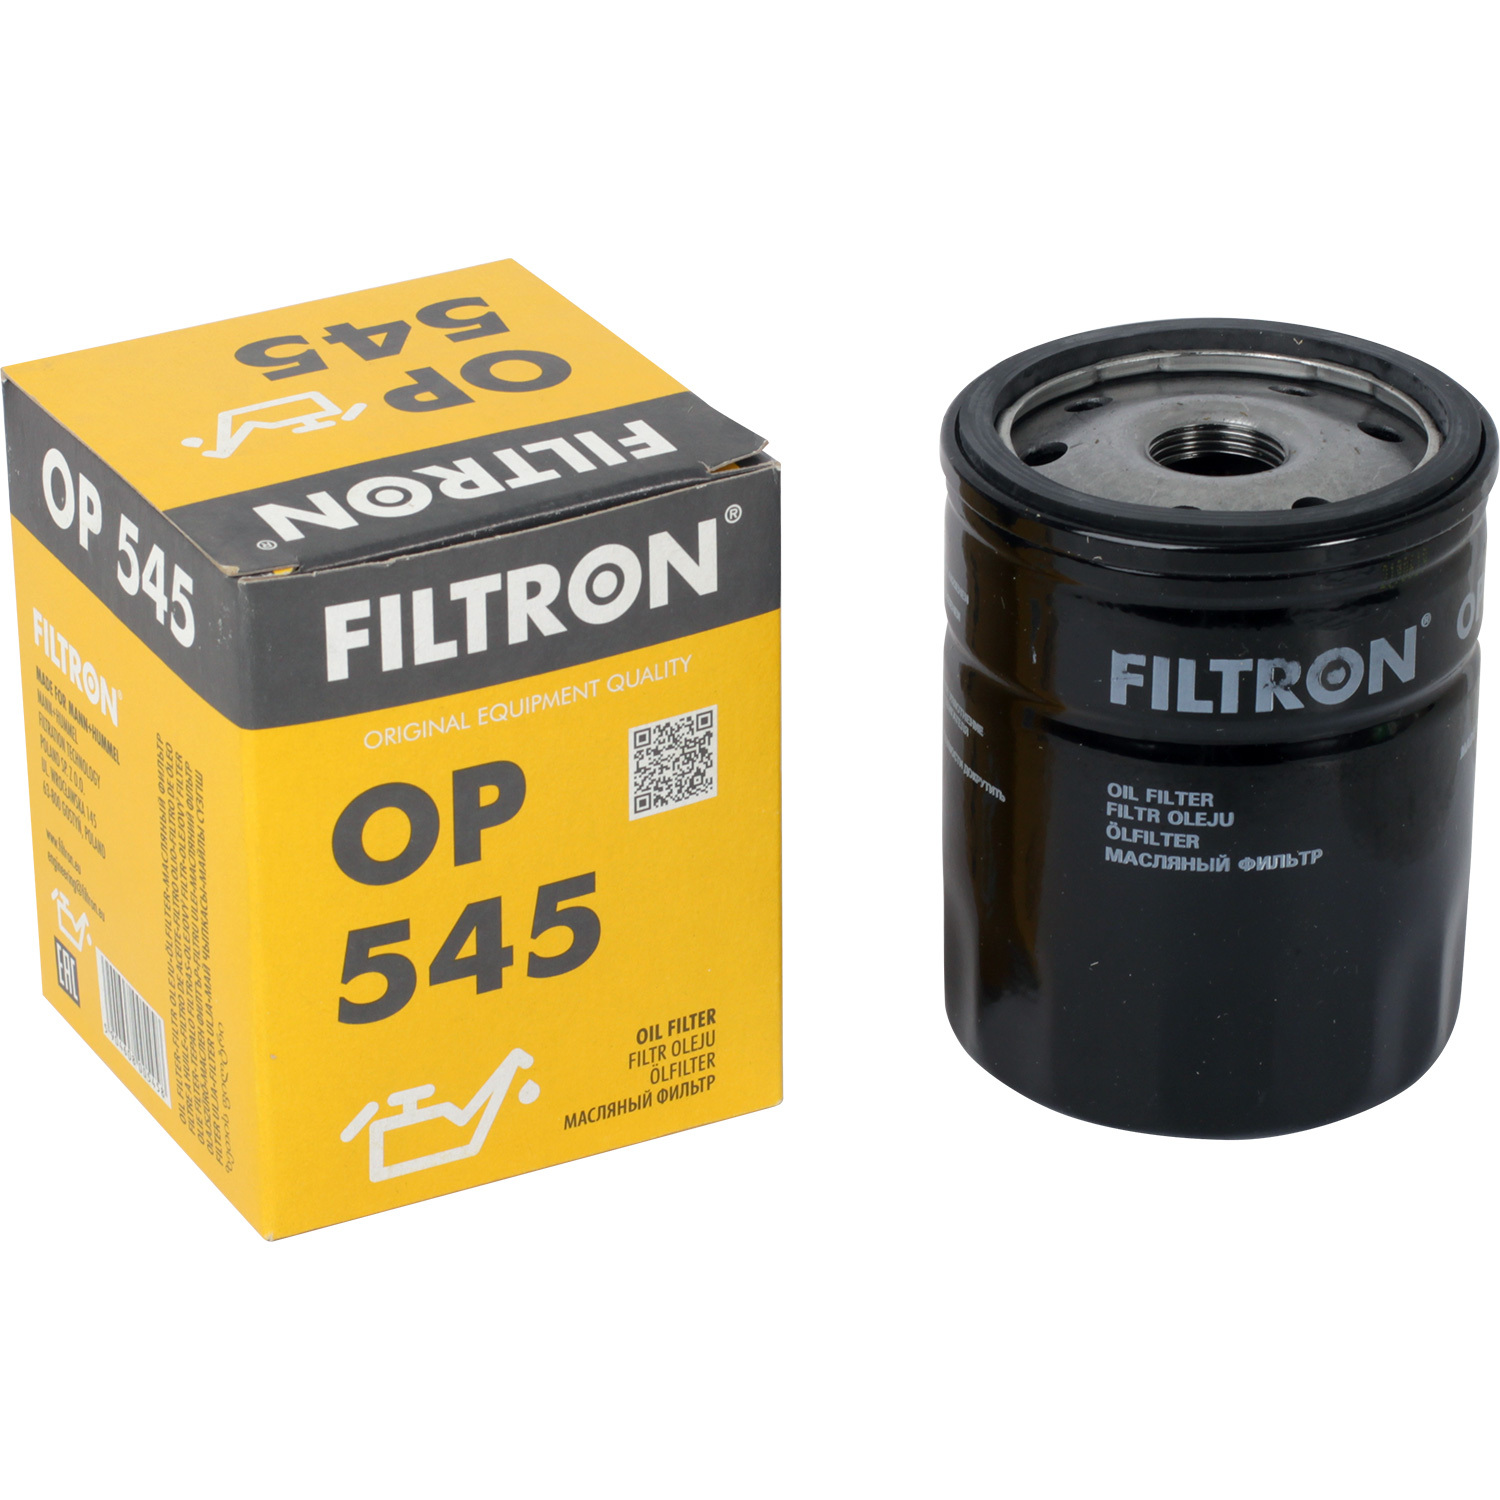 Фильтры Filtron Фильтр масляный Filtron OP545 фильтры filtron фильтр масляный filtron op5971